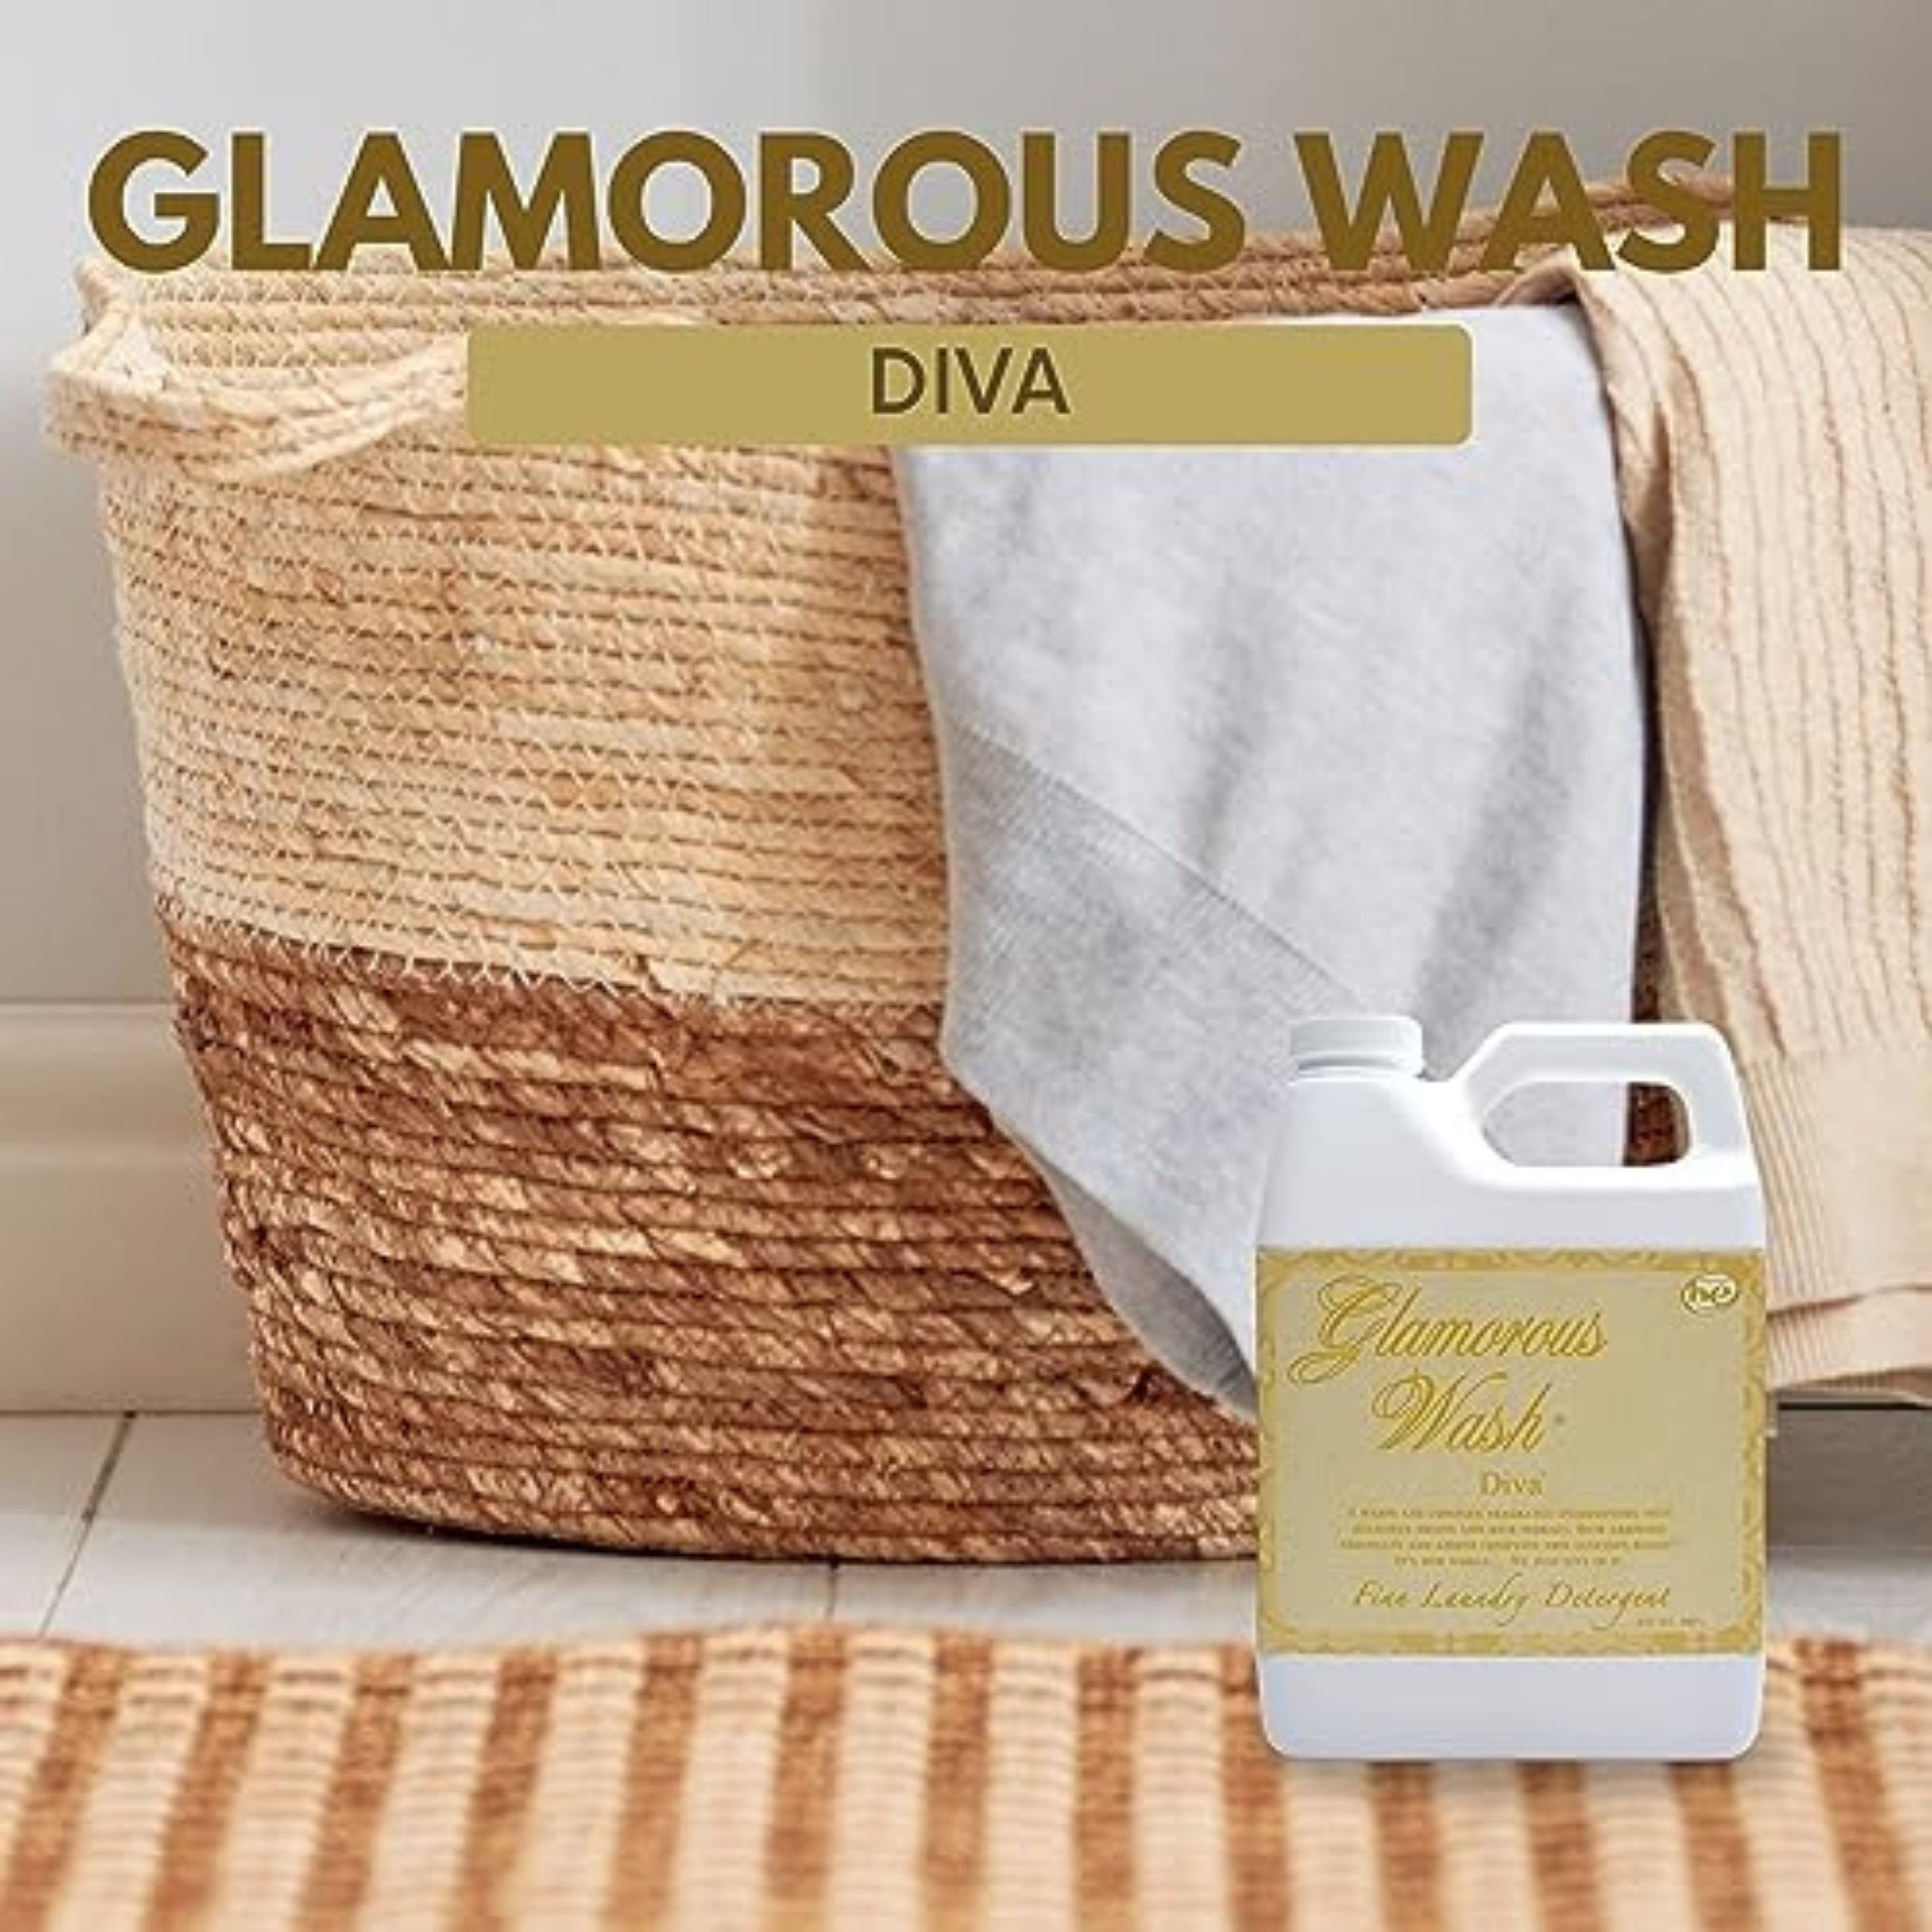 Tyler Glamorous Wash Diva Laundry Liquid Detergent - Hand and Machine Washable Diva Laundry Detergent - 907g (32 Fl Oz) Diva Detergent and Multi-Purpose Key Chain